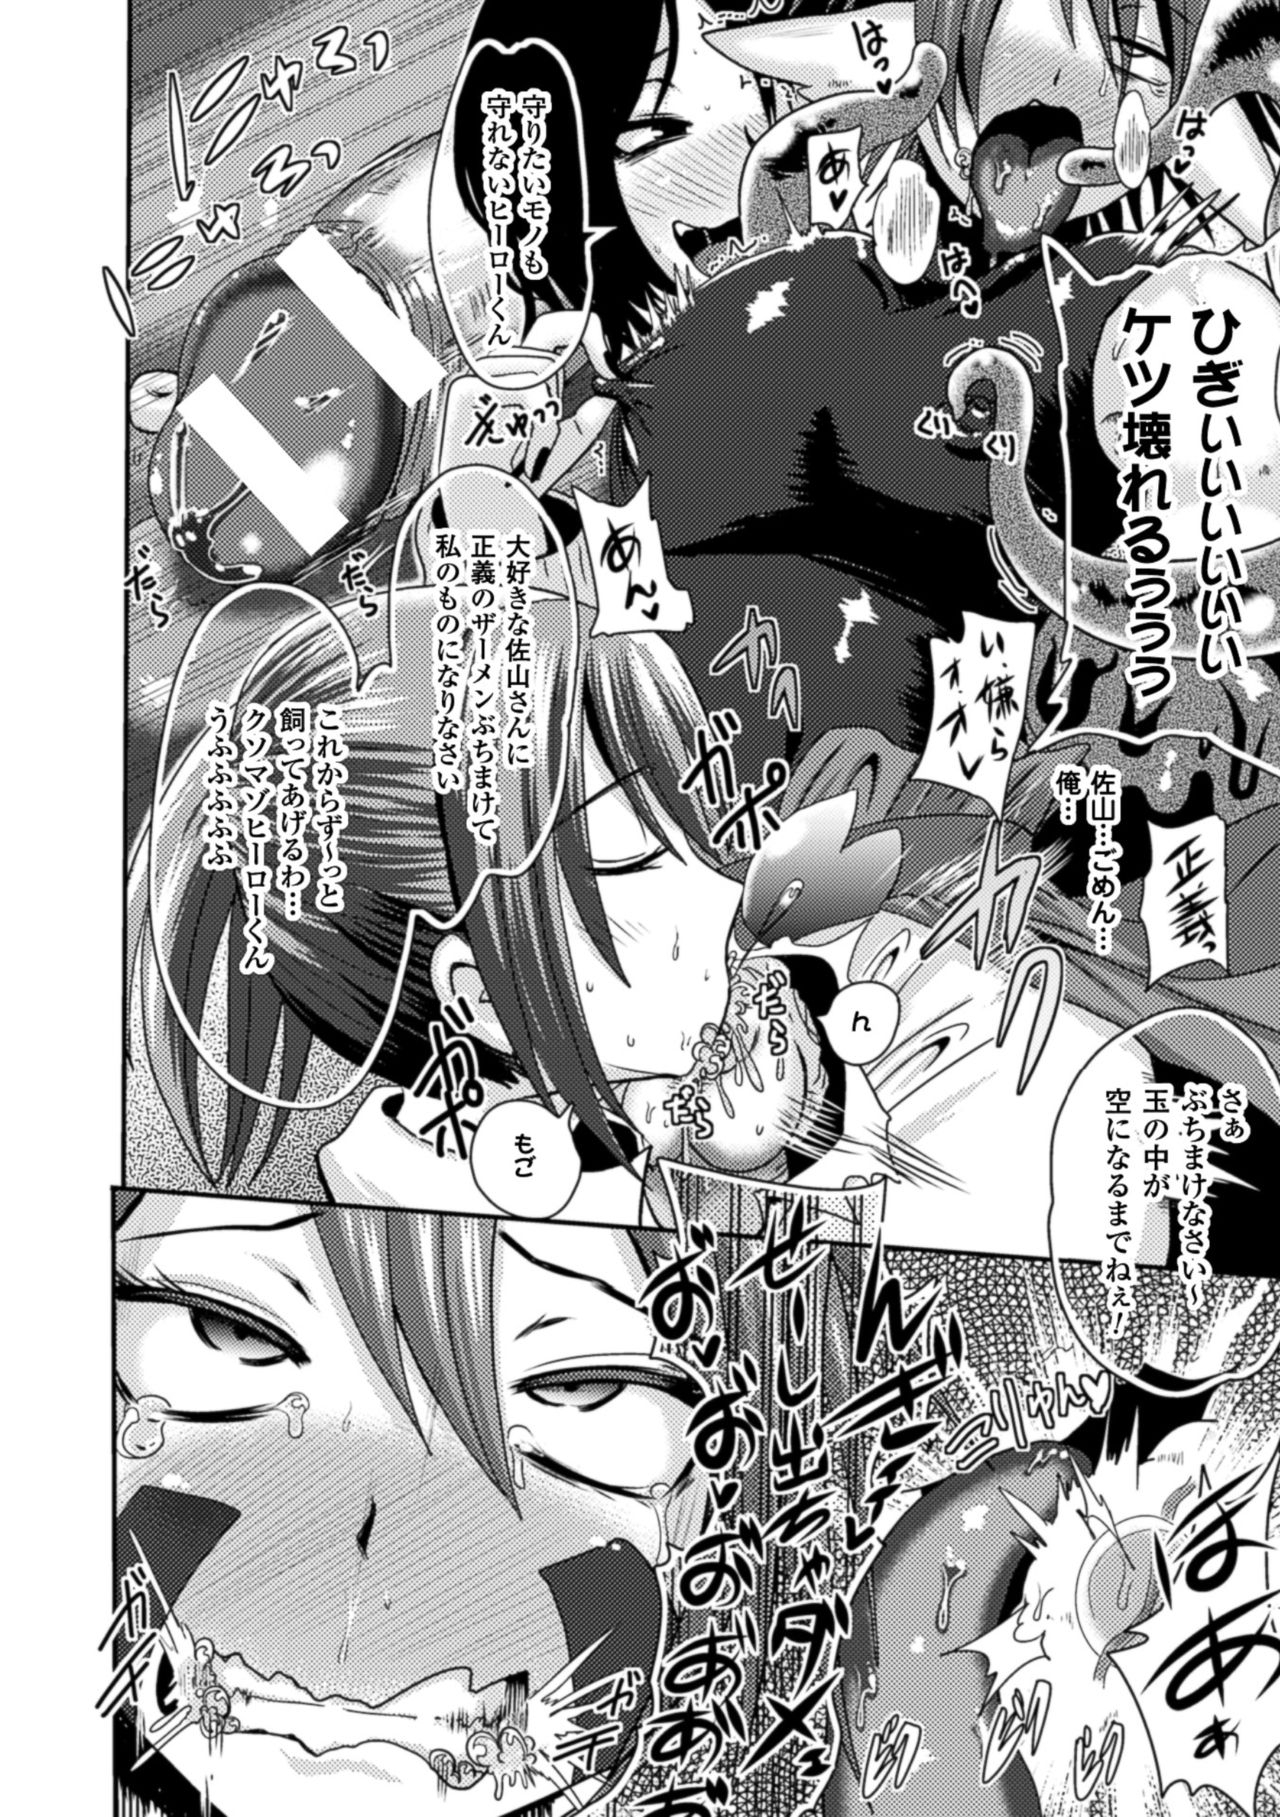 [Akuochisukii Sensei] Akuochisukii Sensei no Heroine Haiboku no Houteishiki - Equation of Heroine's defeat by Mr. Akuochisukii [Digital] 107